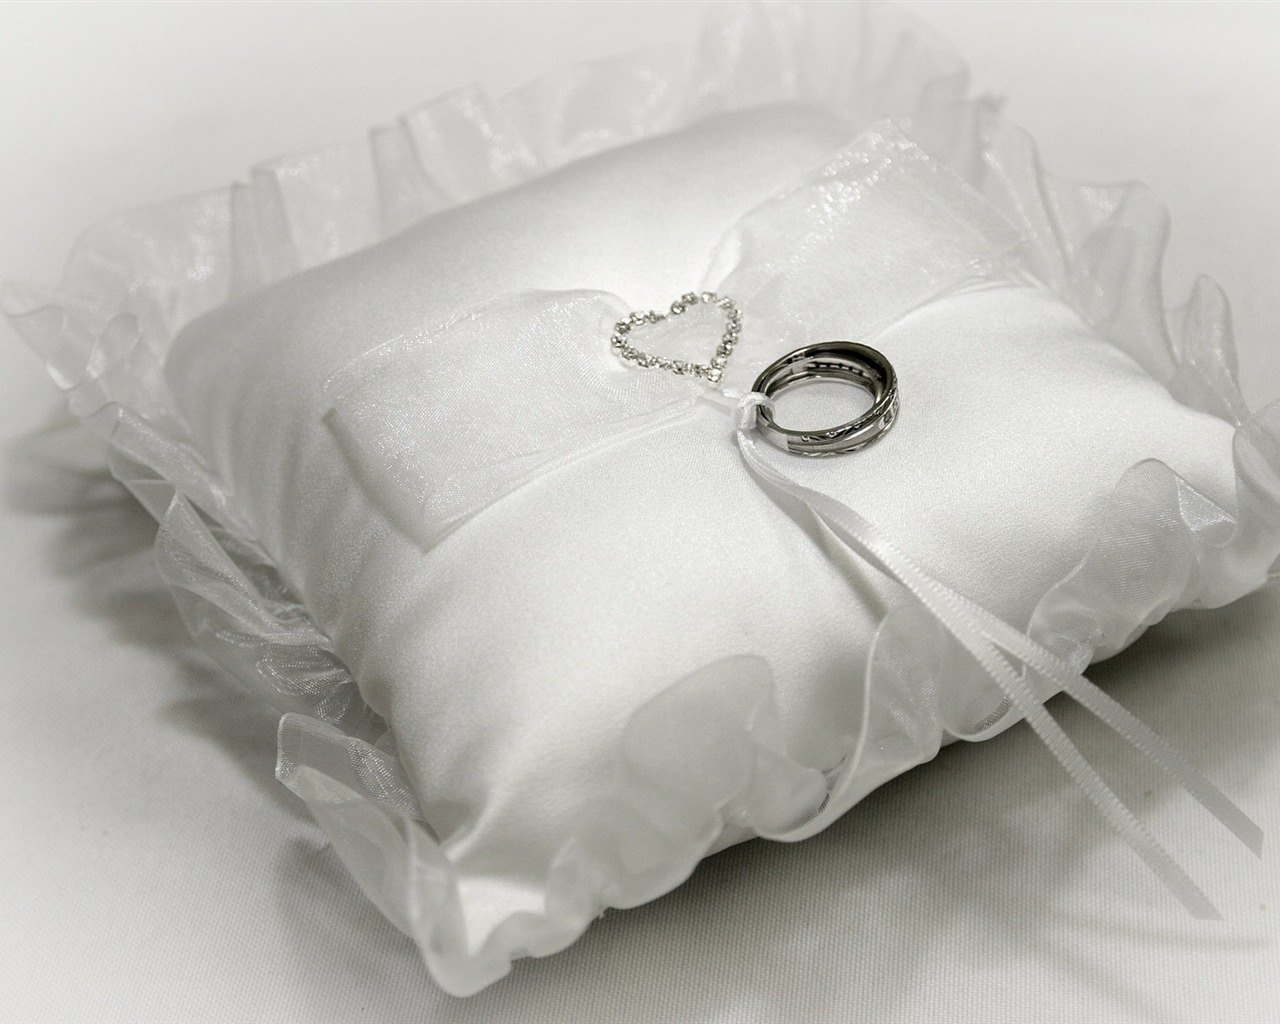 Mariage et papier peint anneau de mariage (1) #10 - 1280x1024